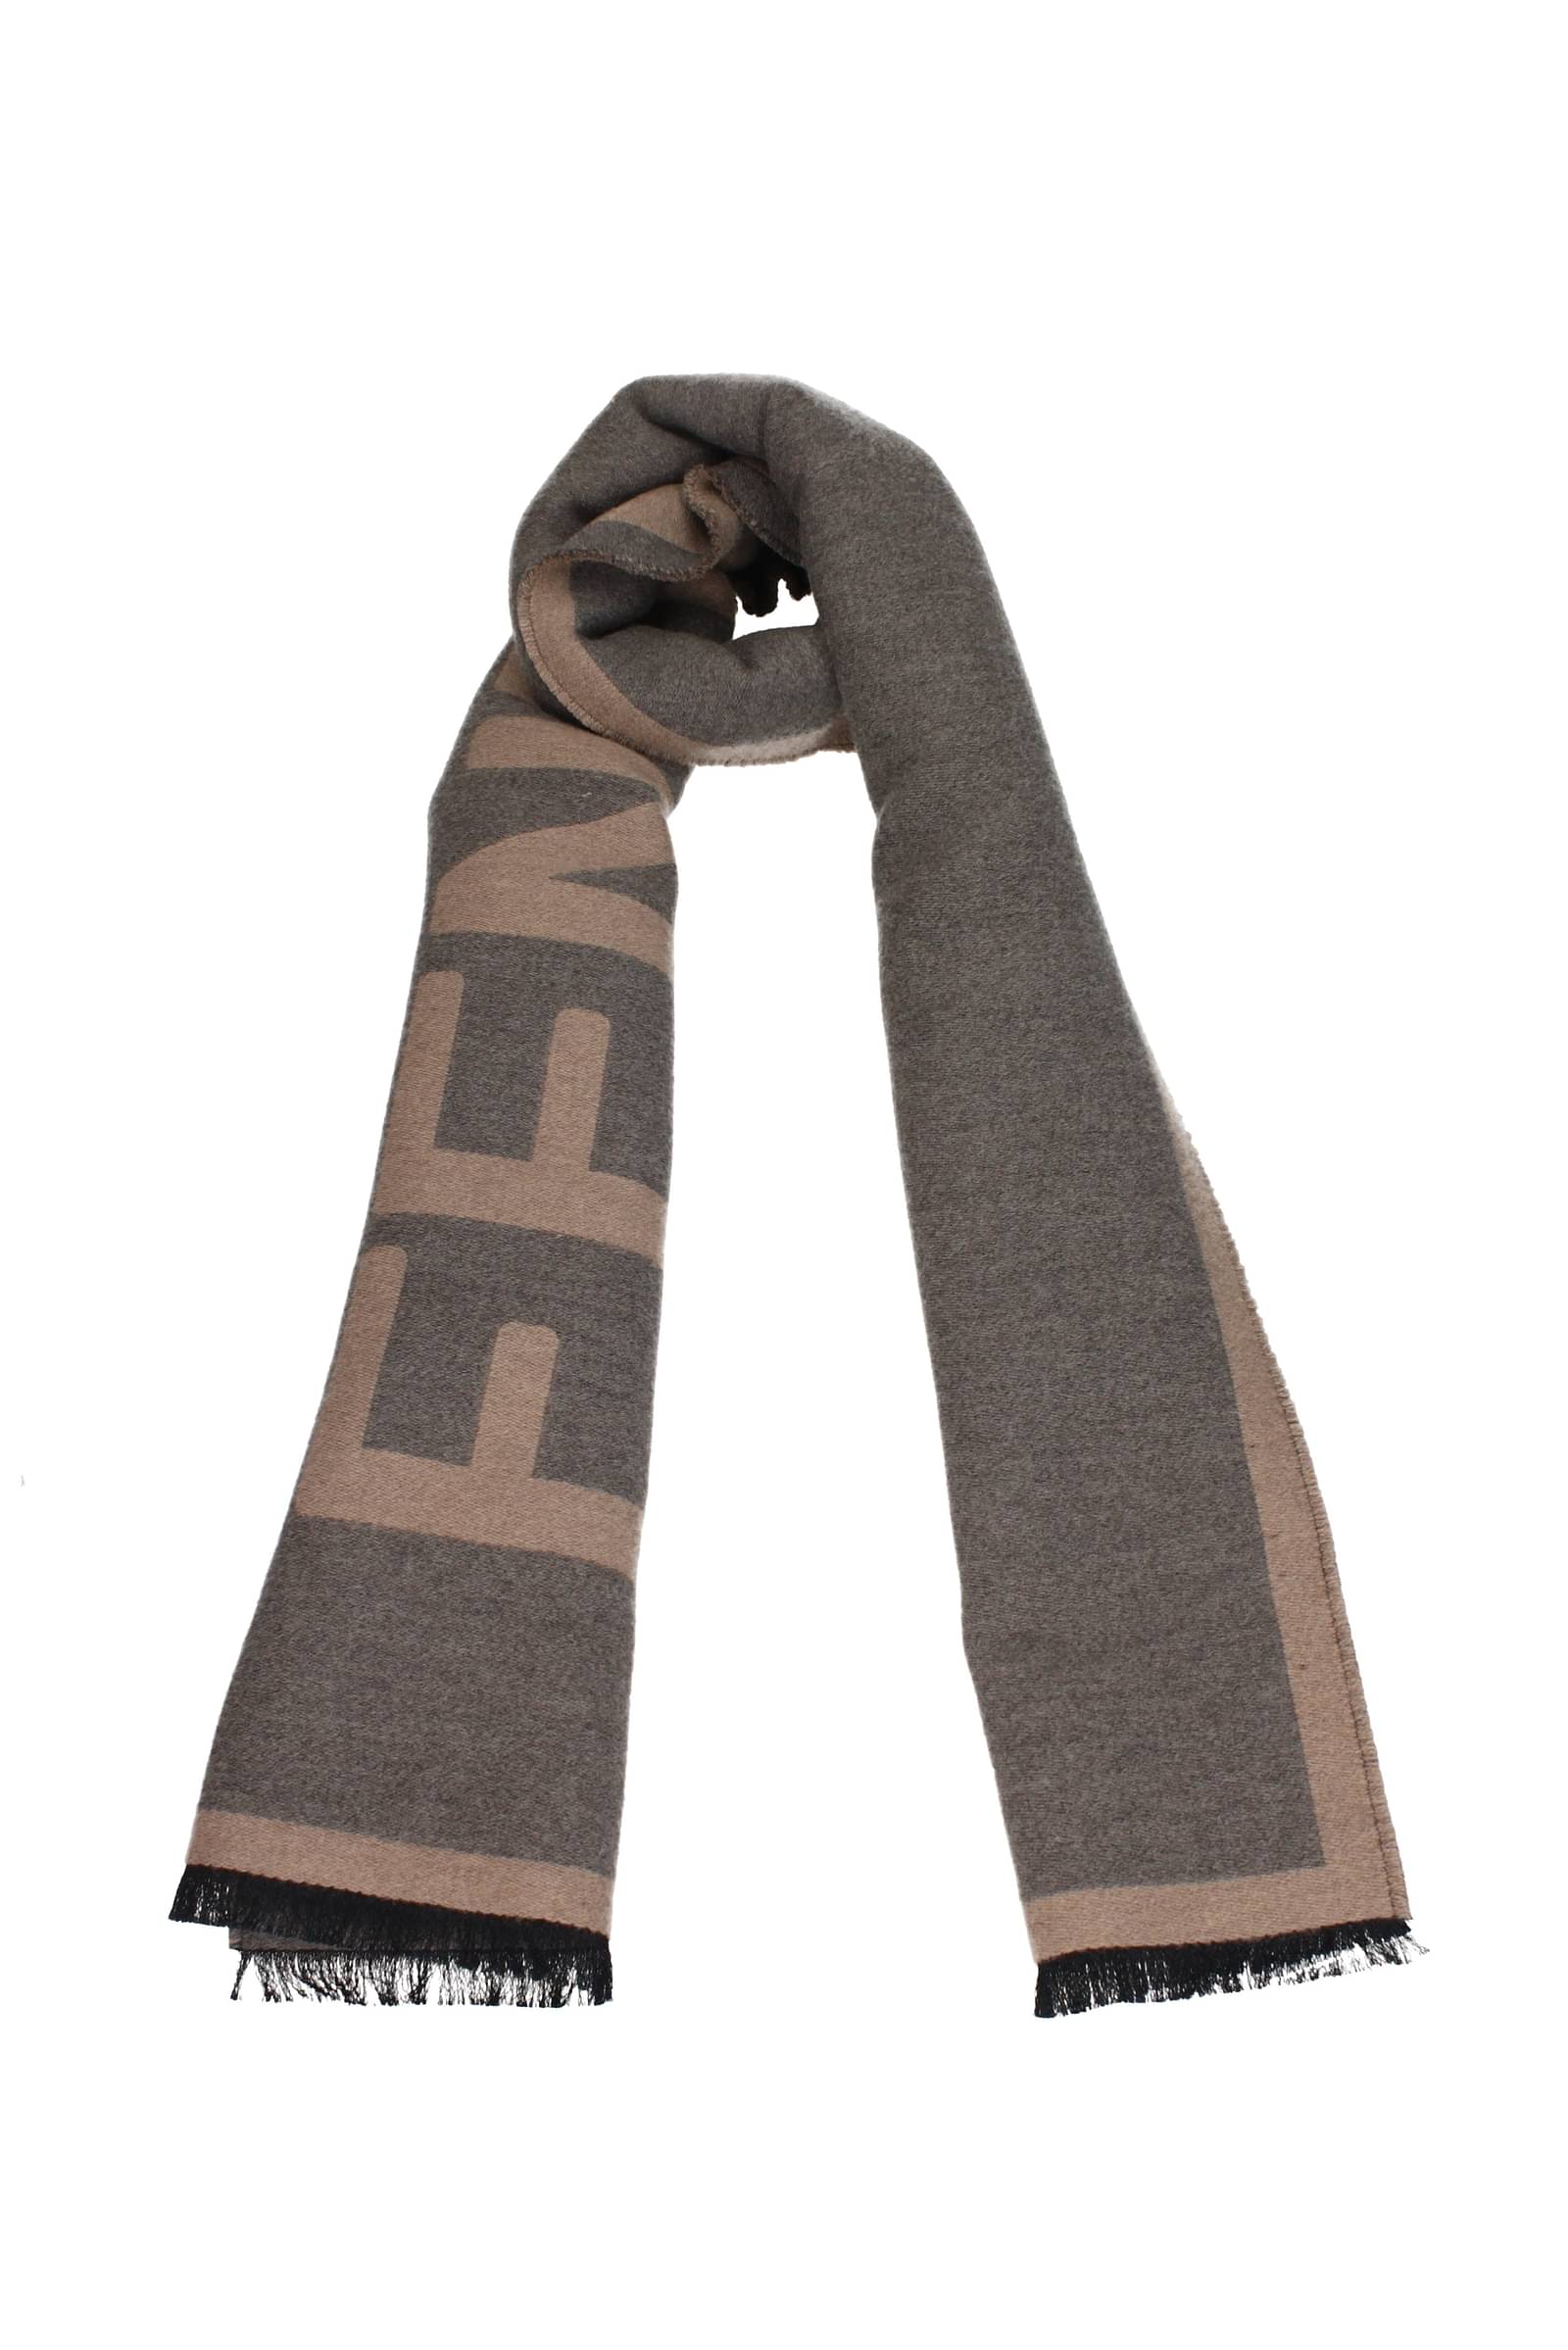 Fendi スカーフ 男性 FXS124AMR0F0JJ4 ウール 灰色 サンド 376€